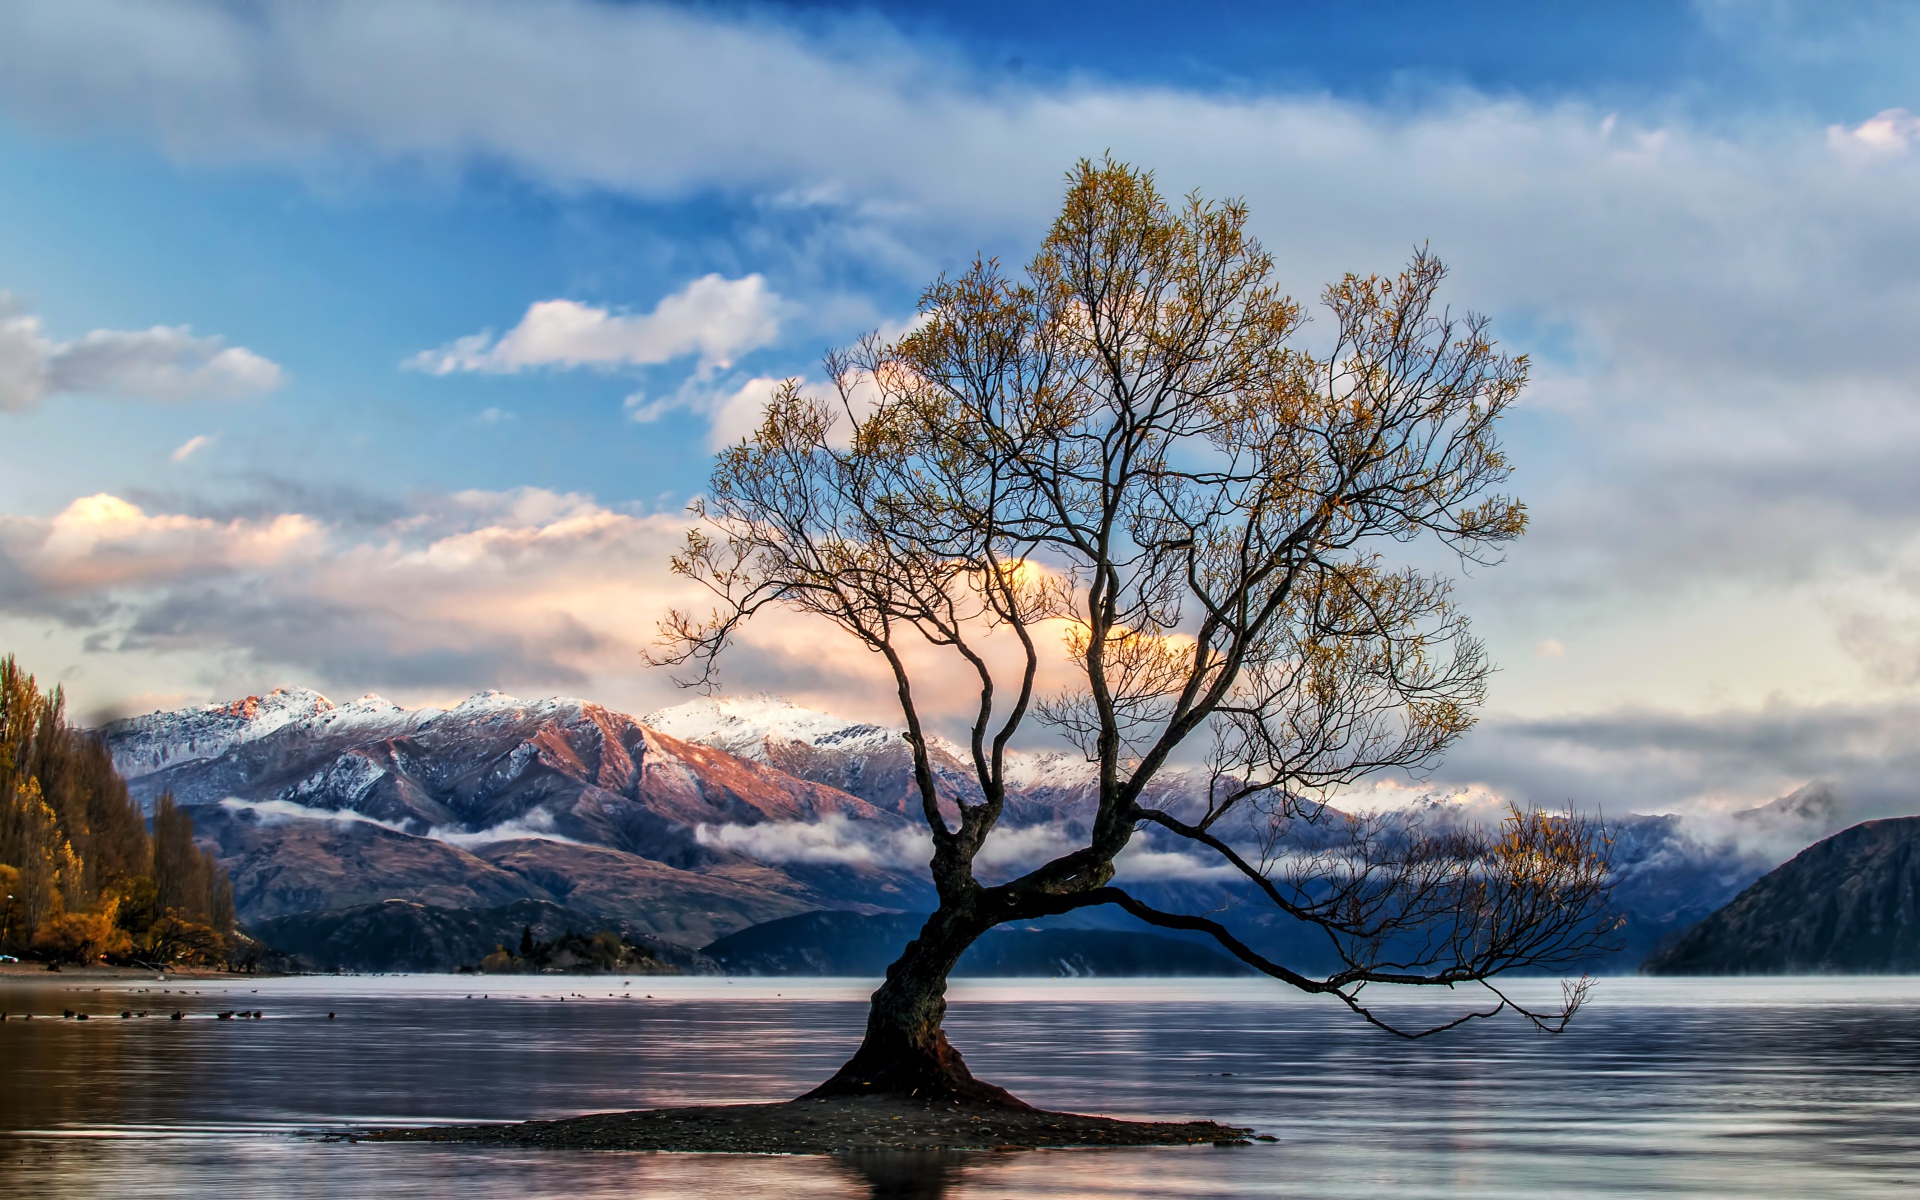 Островок с деревом посреди озера на фоне гор